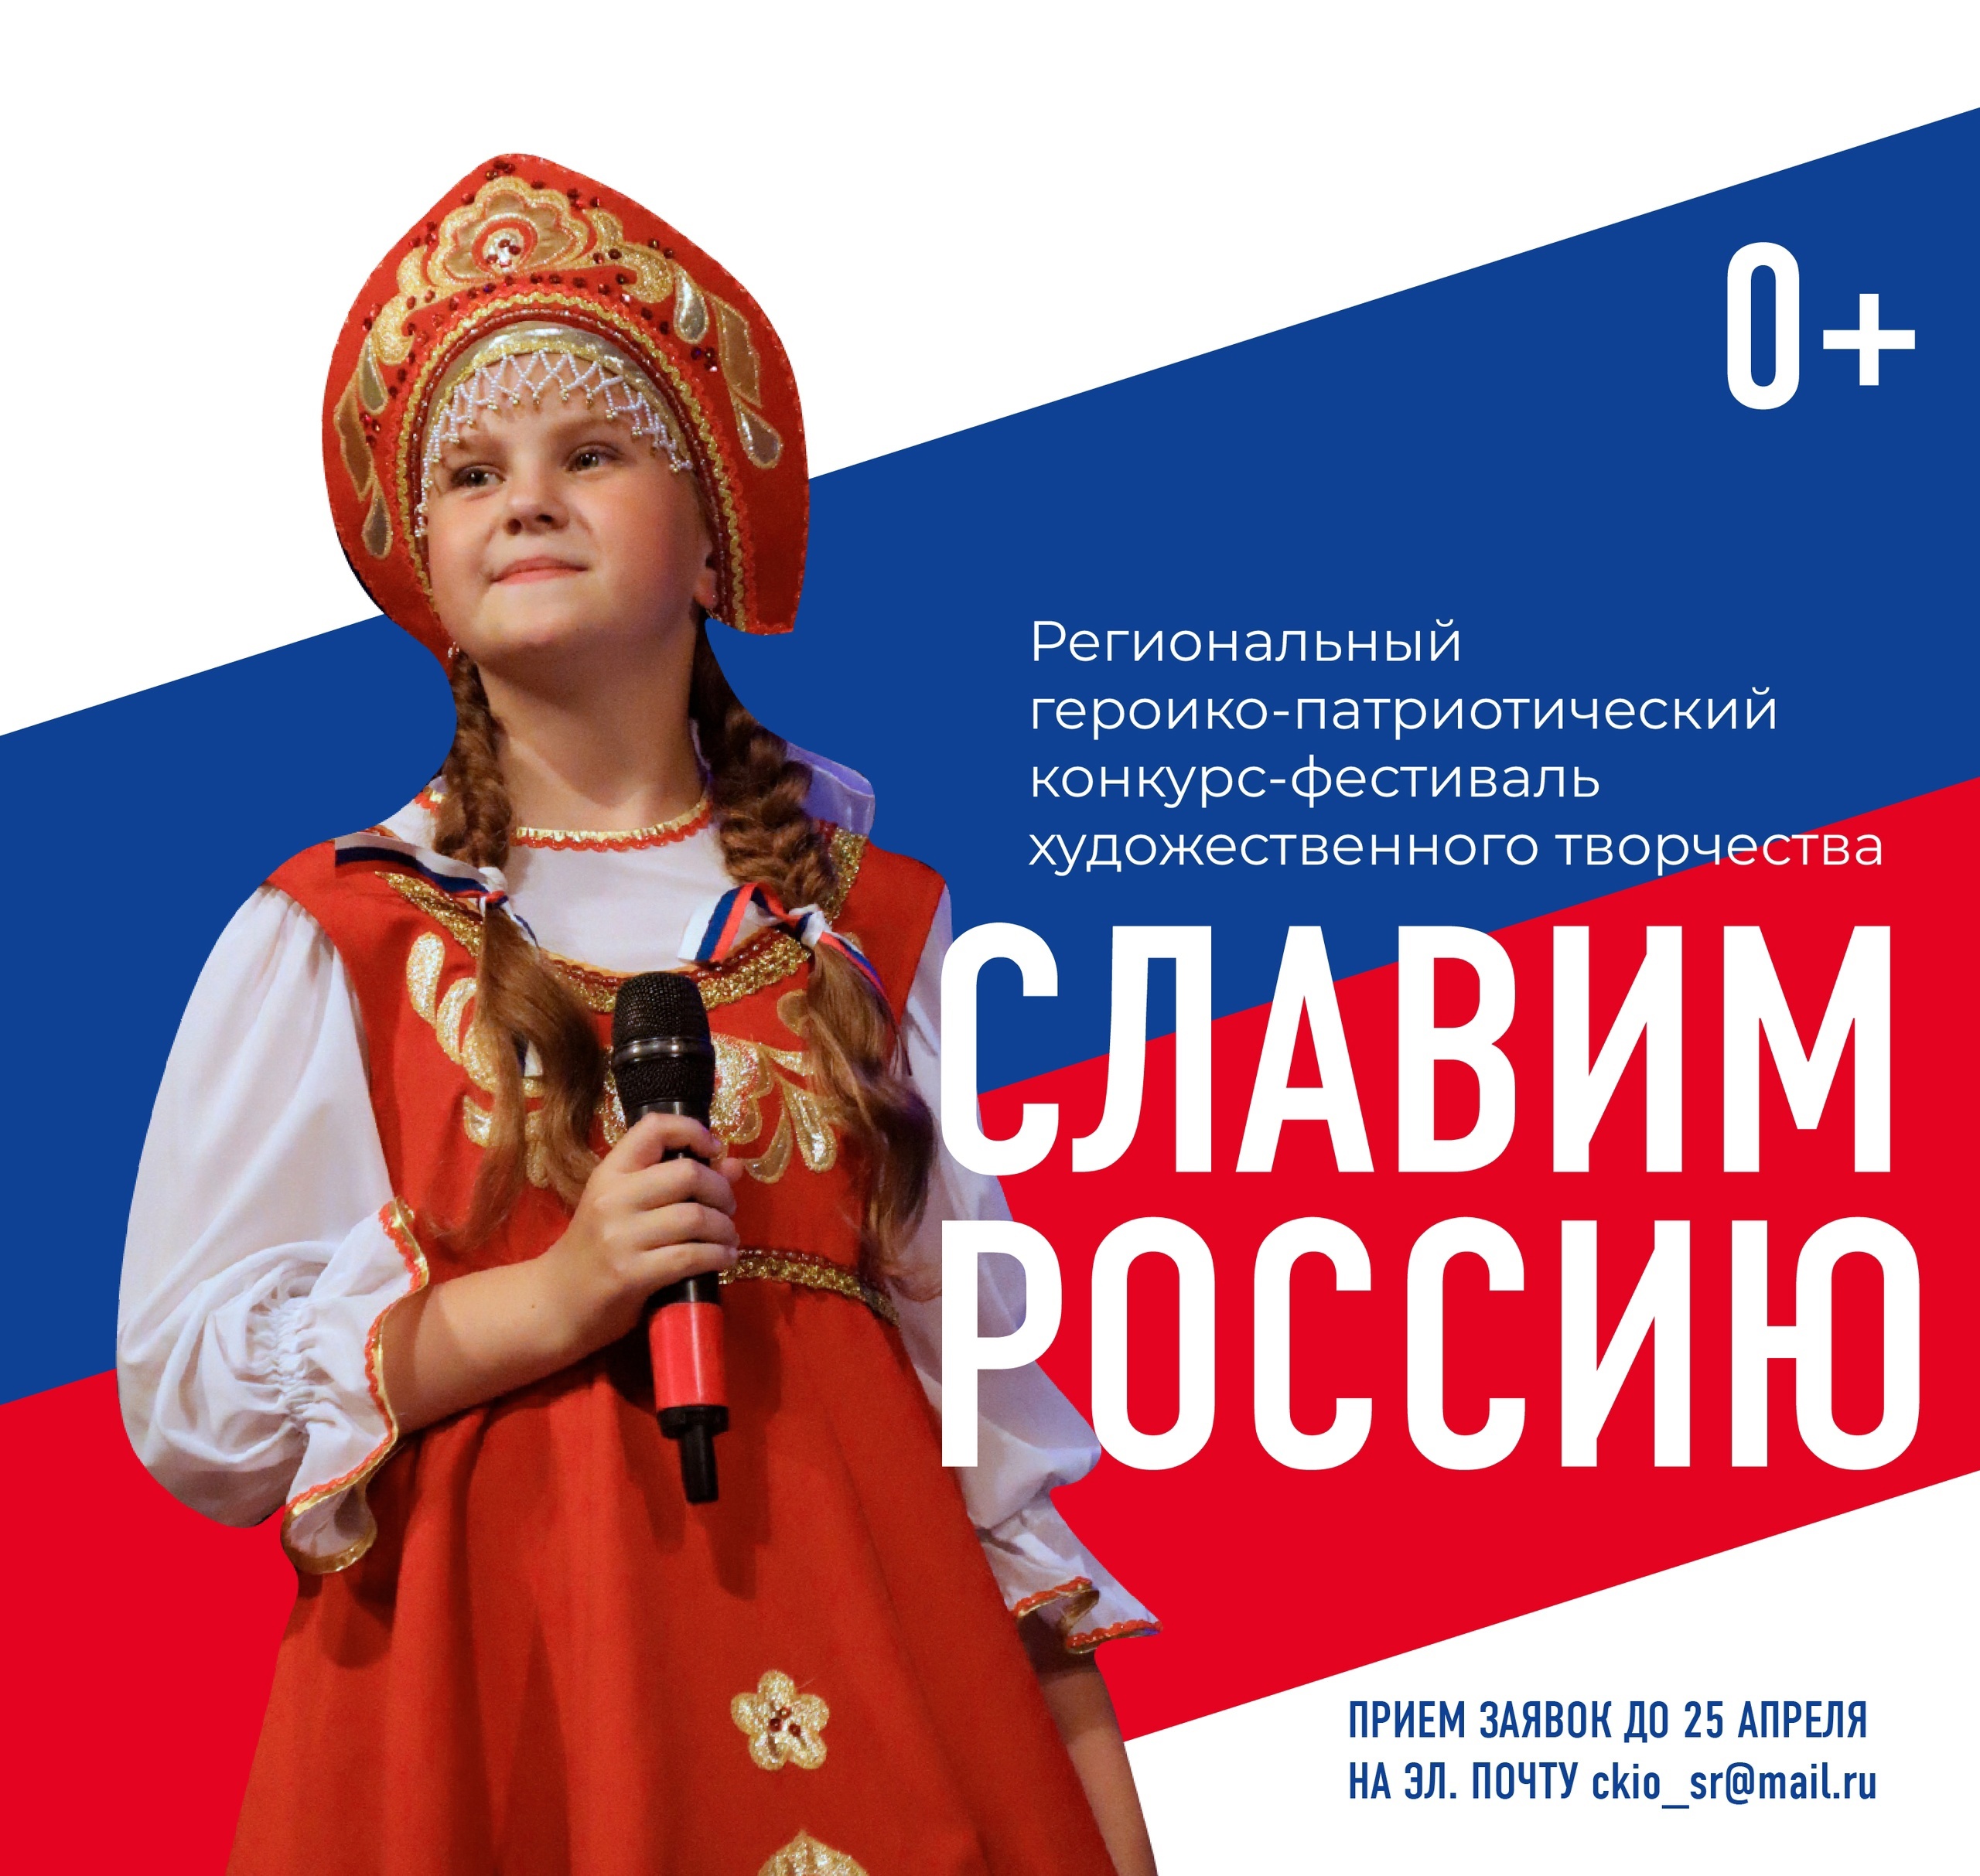 Открыт прием заявок для участия в героико-патриотическом конкурсе-фестивале «Славим Россию».